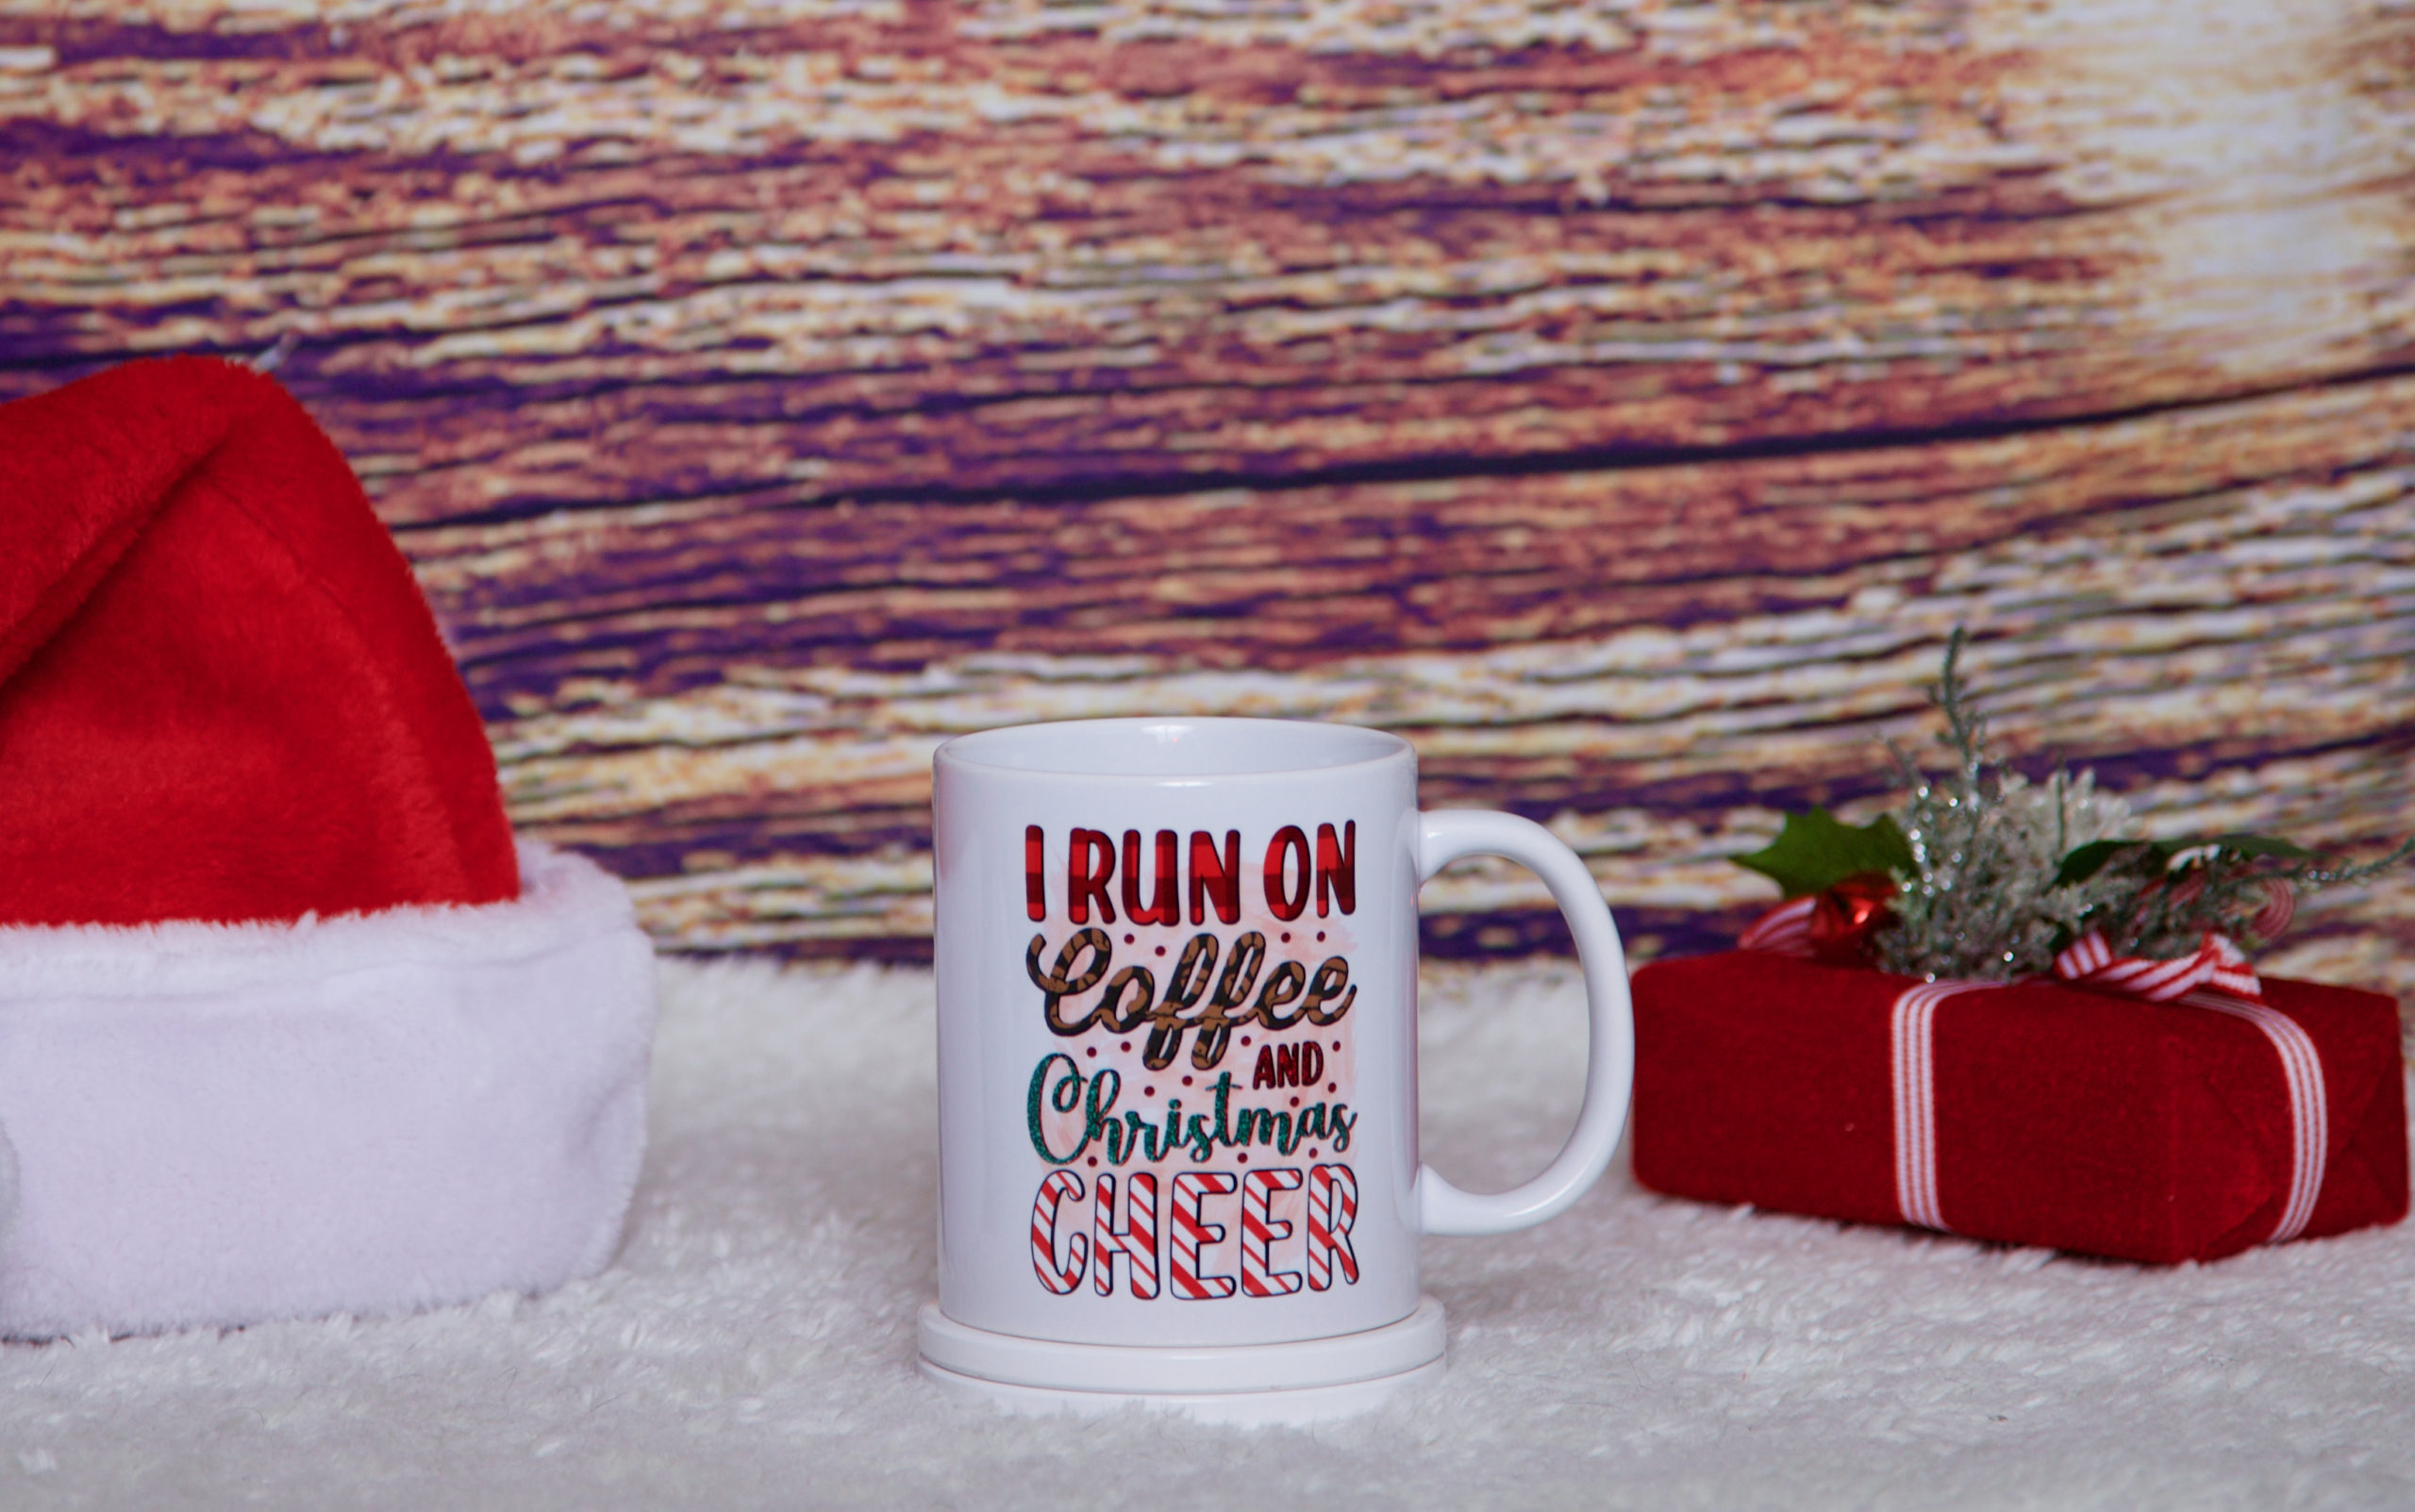 I run on coffee and Christmas cheer mug